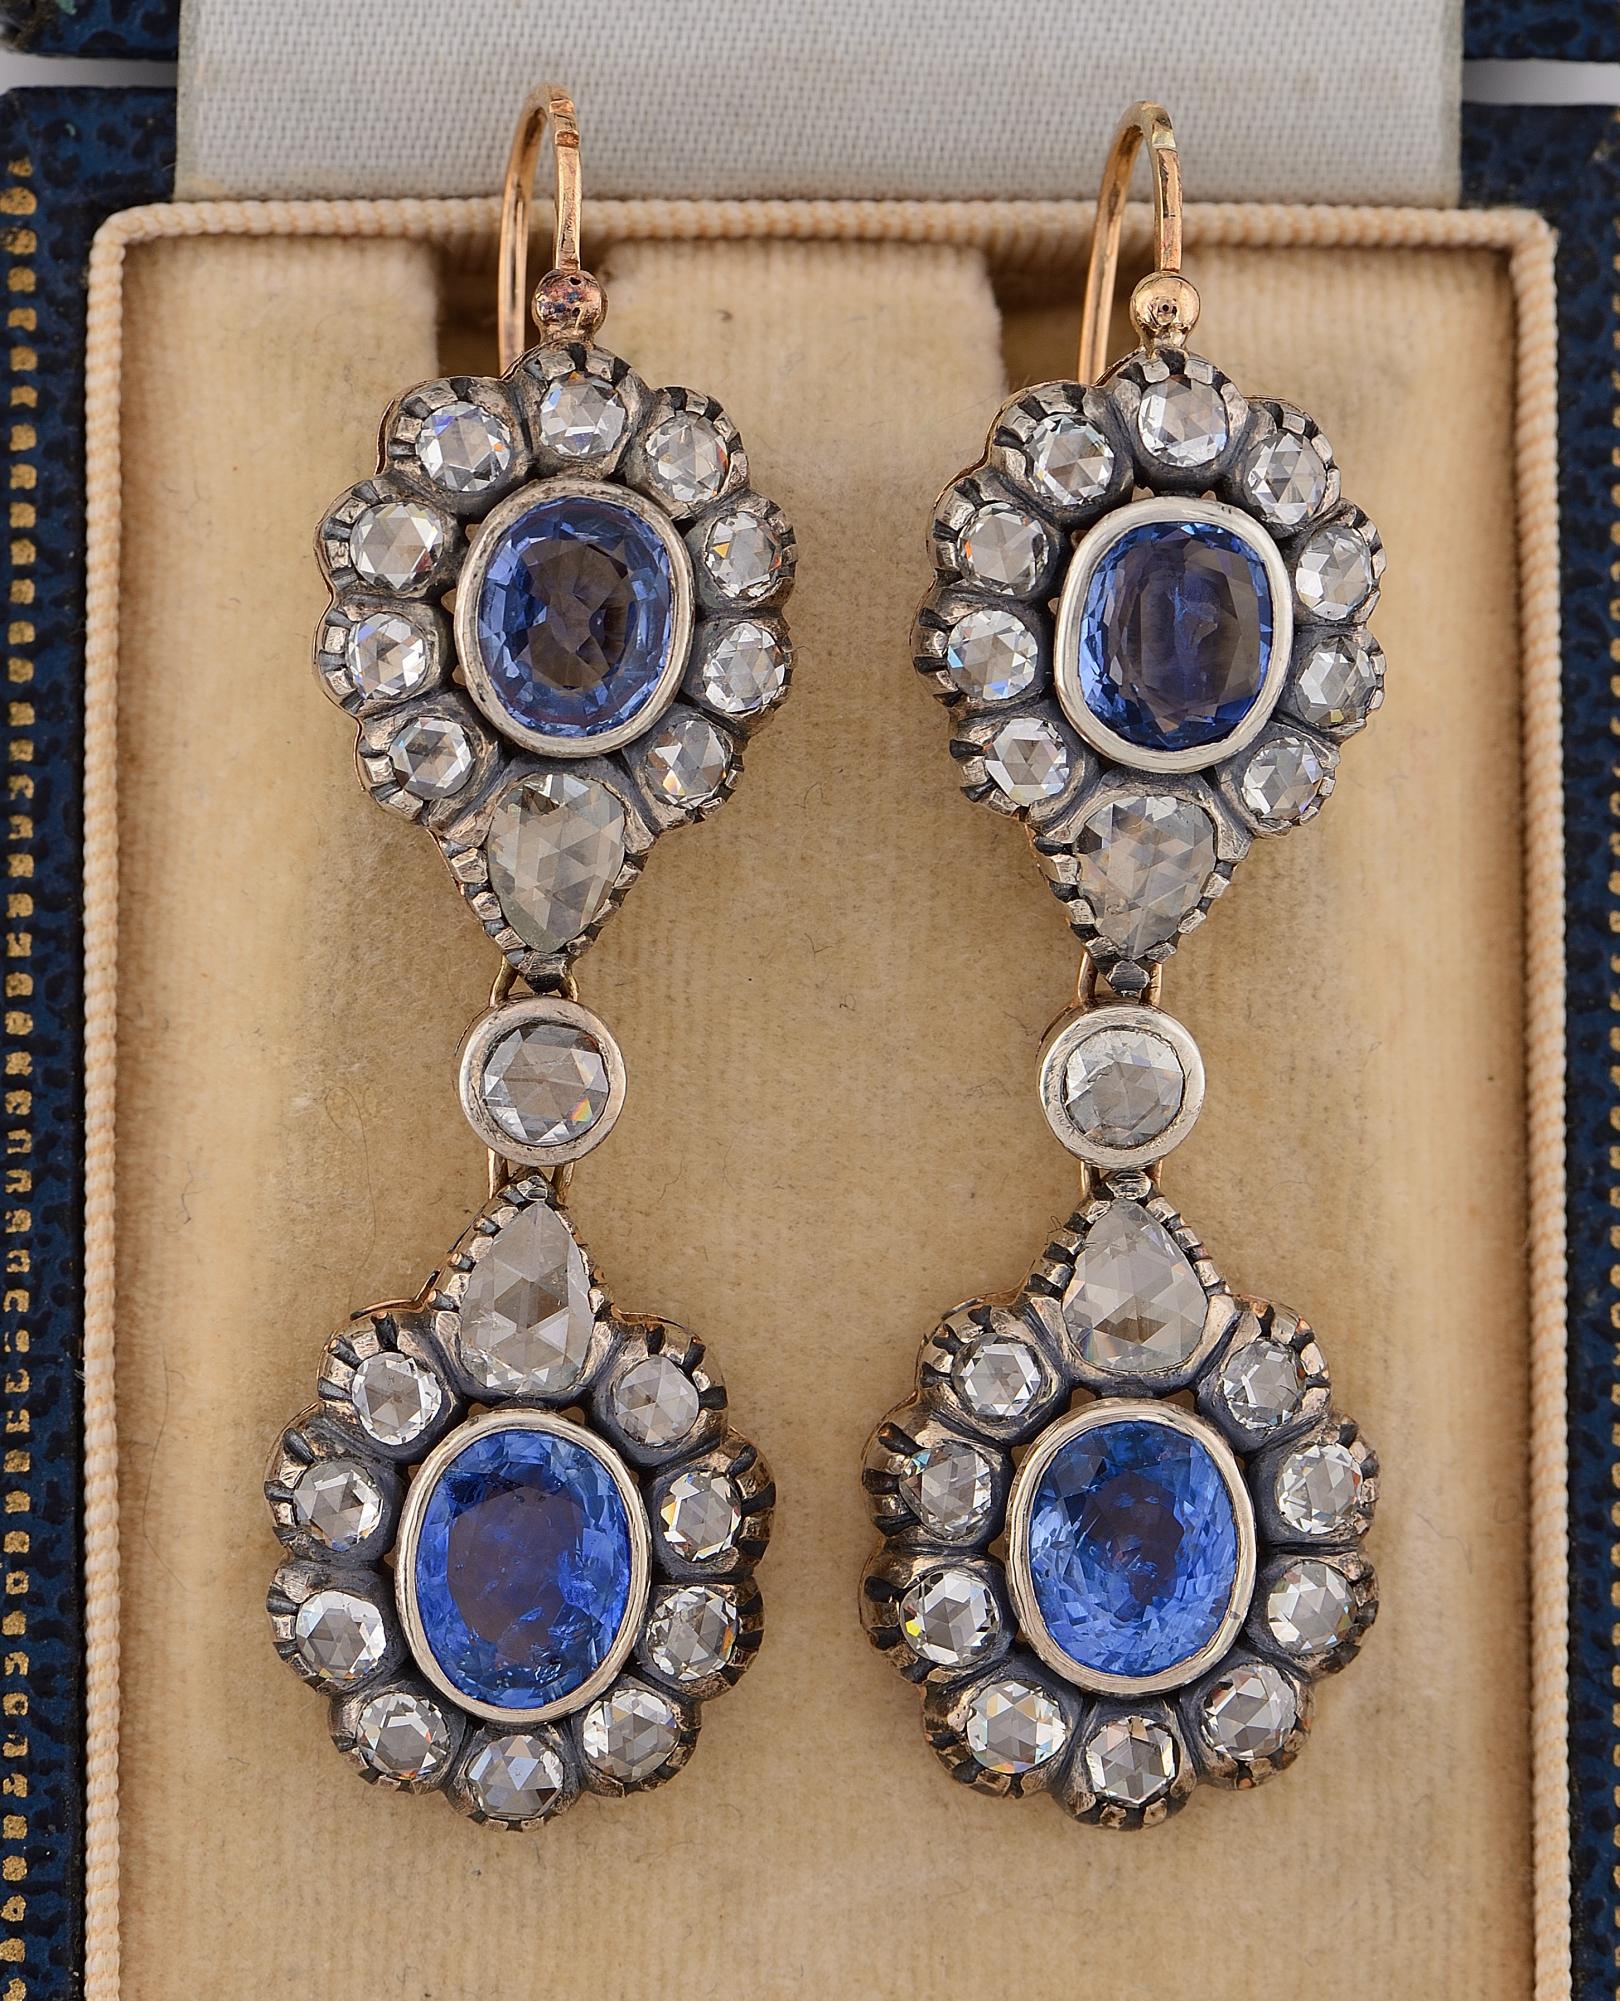 Boucles d'oreilles en diamant et saphir d'époque victorienne, 1880 env.
Fabriqué à la main en or massif 18 KT surmonté d'argent.
Un design exquis en double grappe pour un impact visuel étonnant.
Ils sont sertis d'une sélection de 4 saphirs bleus